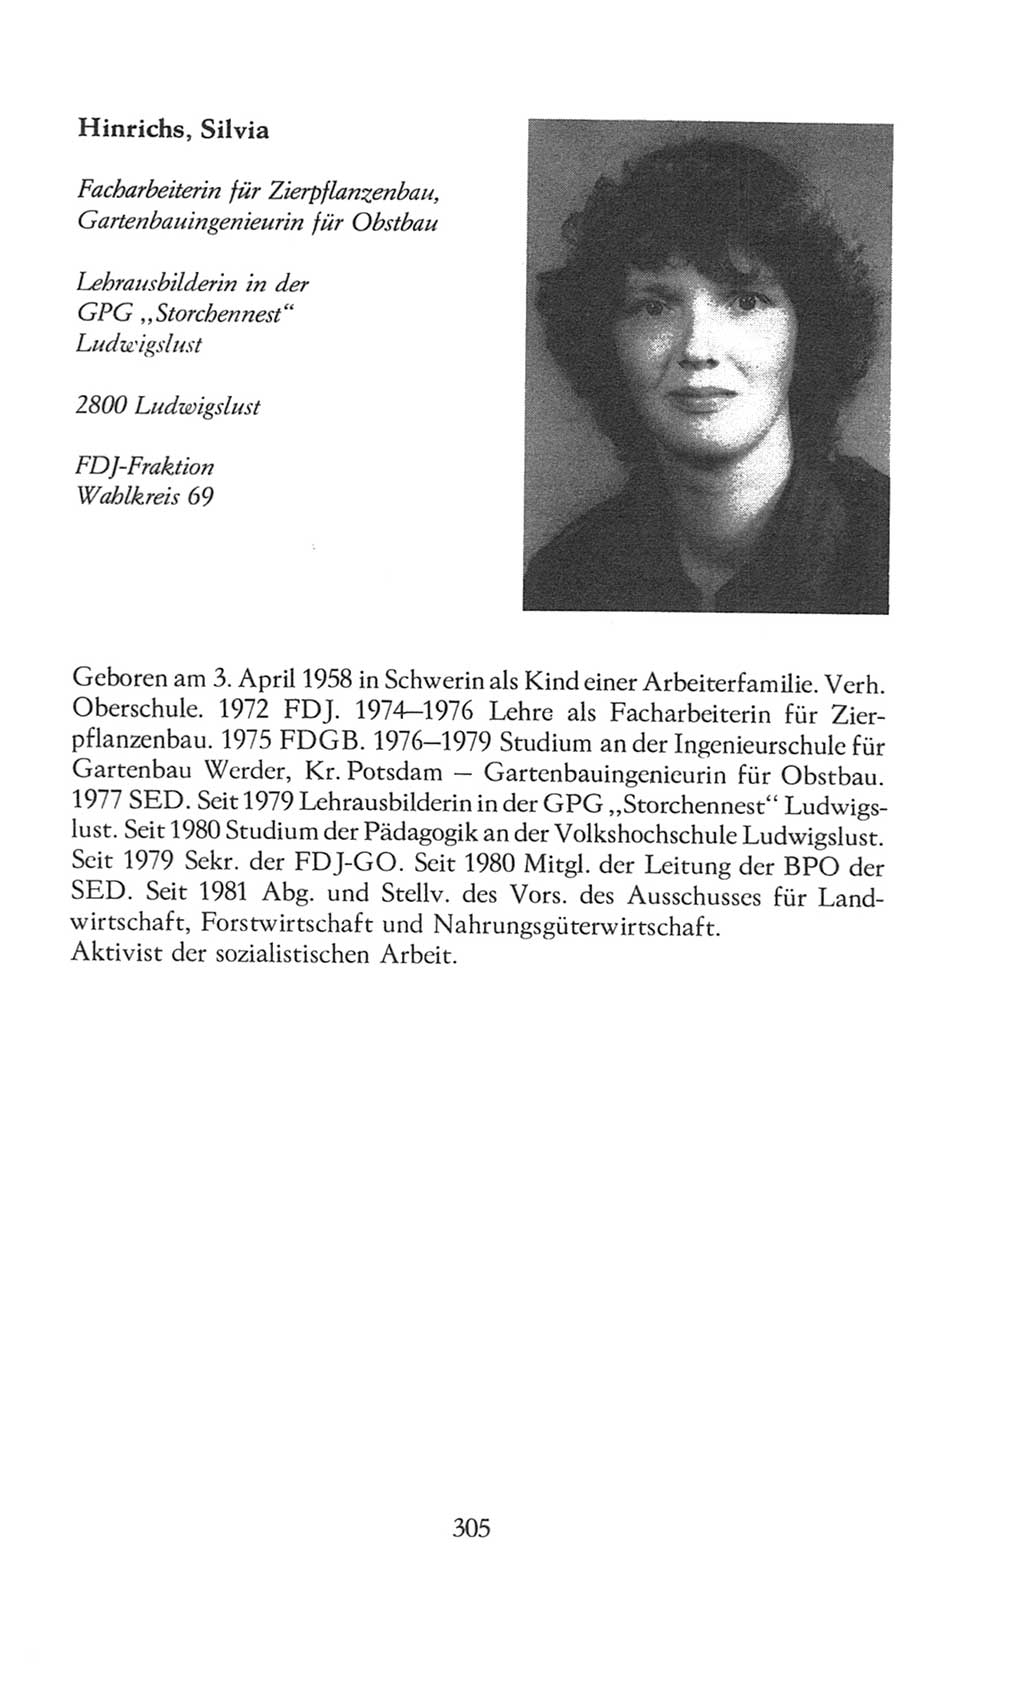 Volkskammer (VK) der Deutschen Demokratischen Republik (DDR), 8. Wahlperiode 1981-1986, Seite 305 (VK. DDR 8. WP. 1981-1986, S. 305)